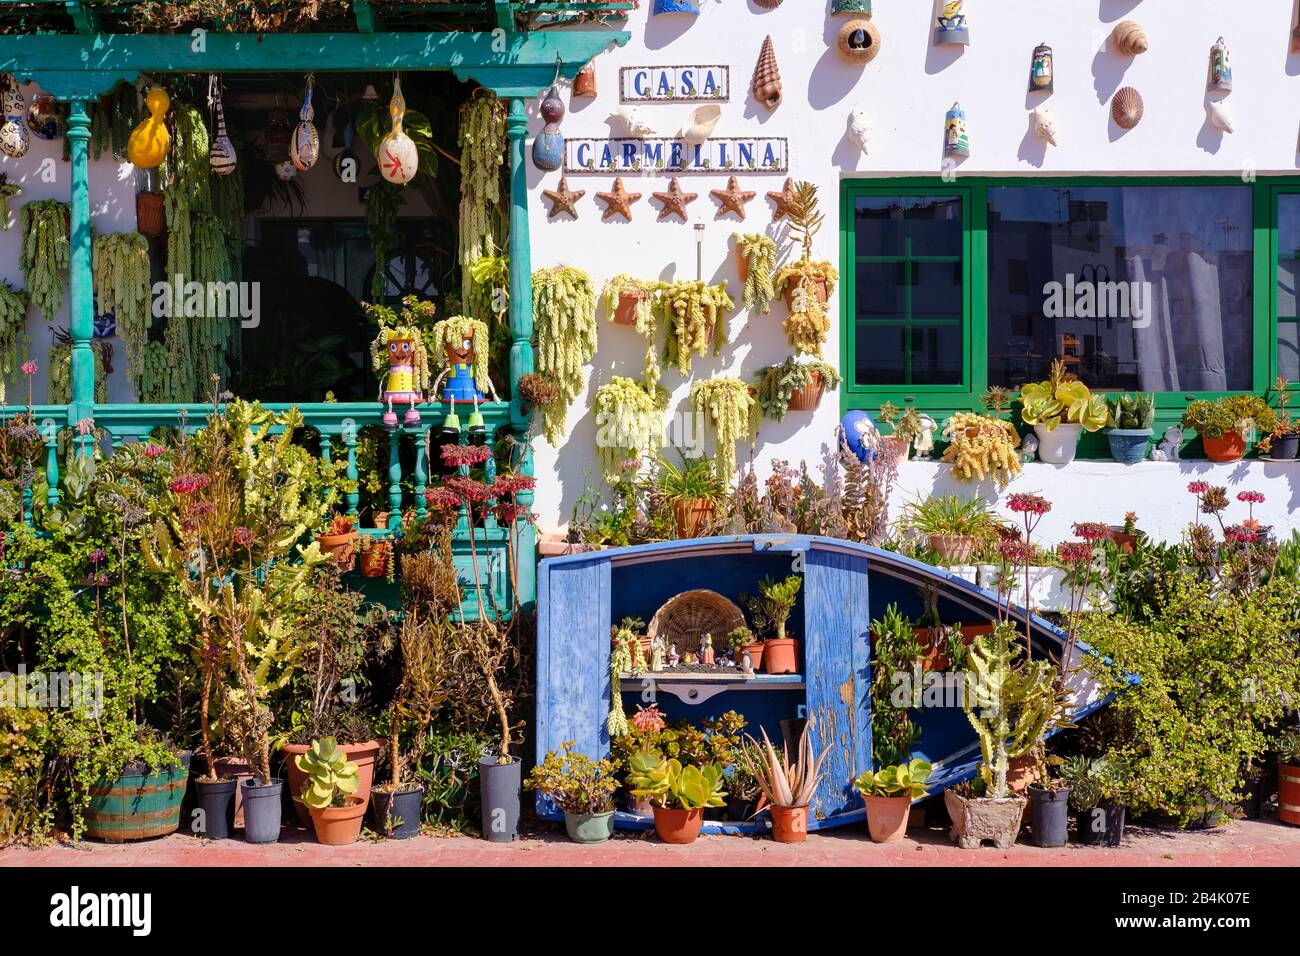 Topfpflanzen und Keramik an Hauswand, Dorf Punta Mujeres, Lanzarote, Kanarische Inseln, Spanien Stockfoto